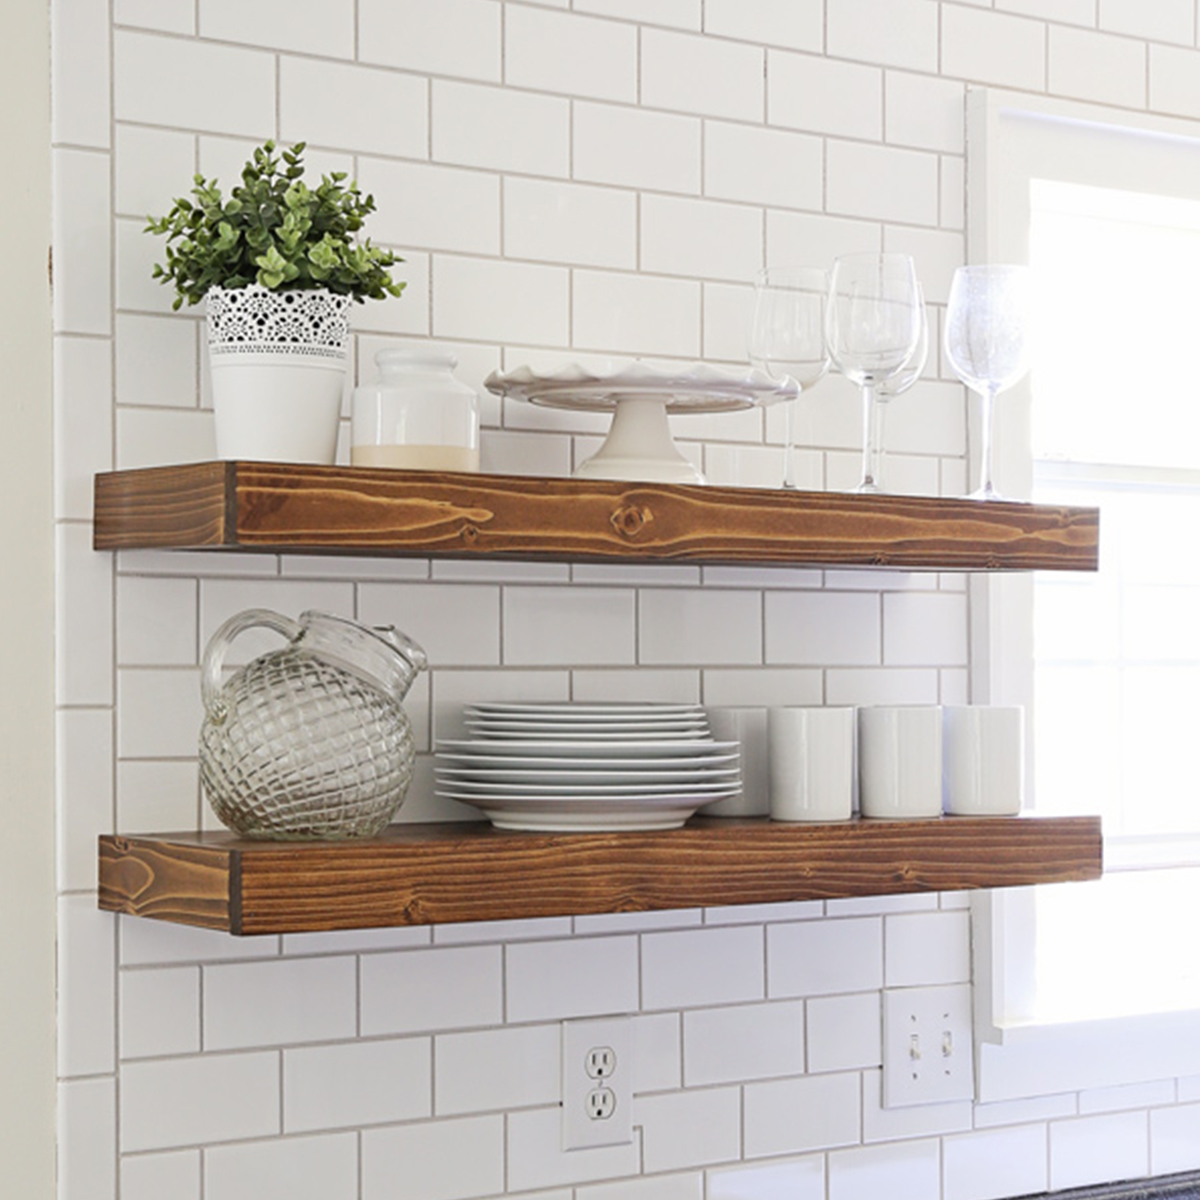 Diy Kitchen Floating Shelves Lessons, How To Hang Floating Shelves On Ceramic Tile